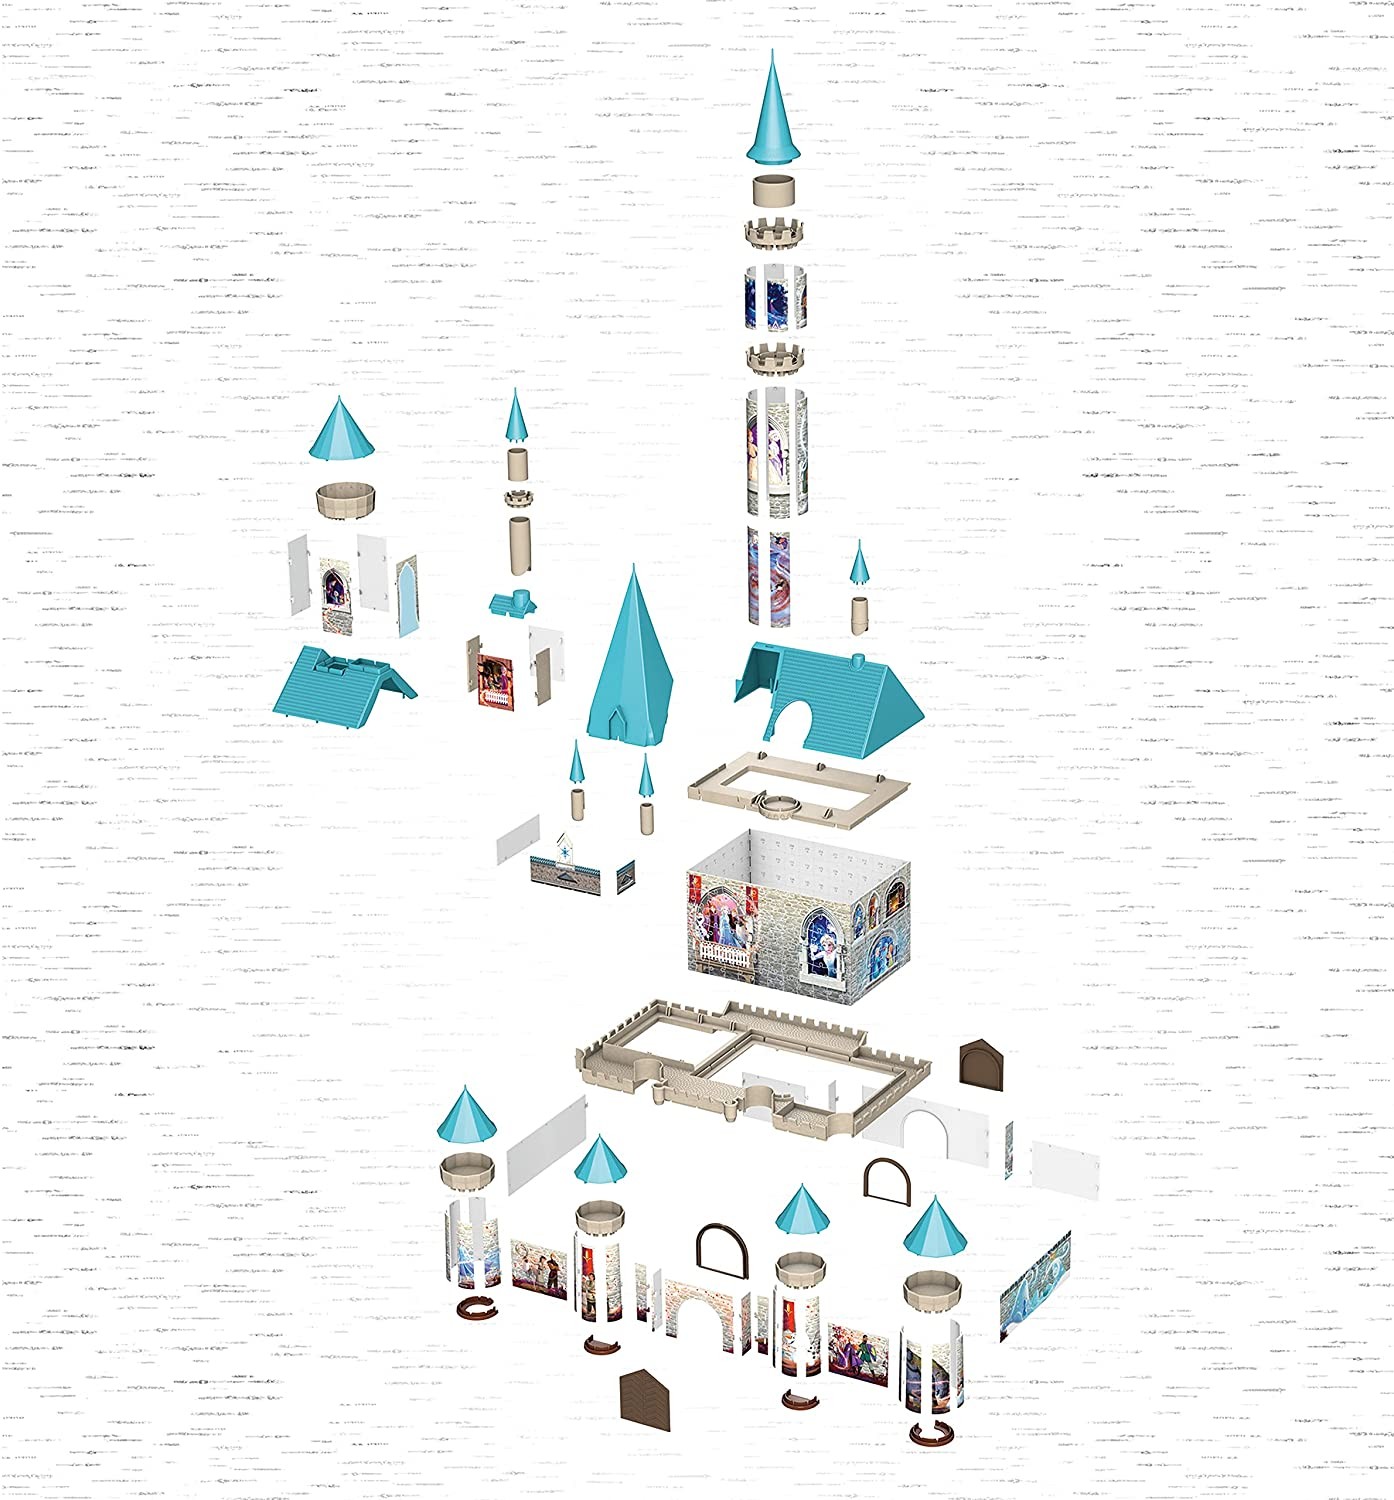 3D Puzzle 216: Frozen II Disney Castle